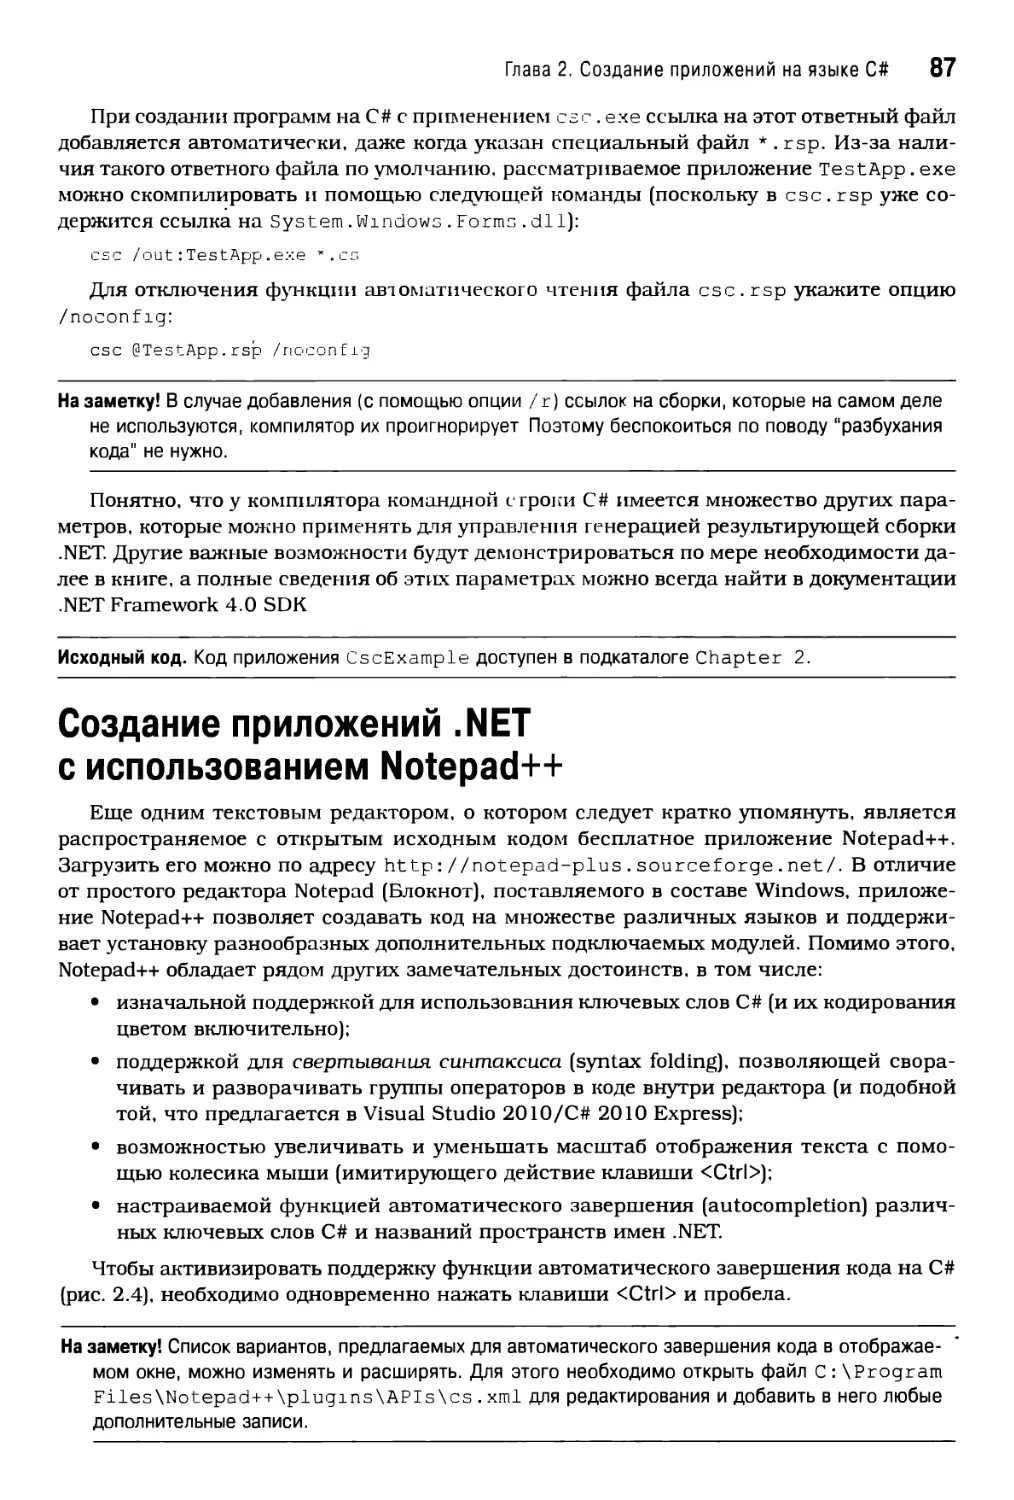 Создание приложений .NET с использованием Notepad++